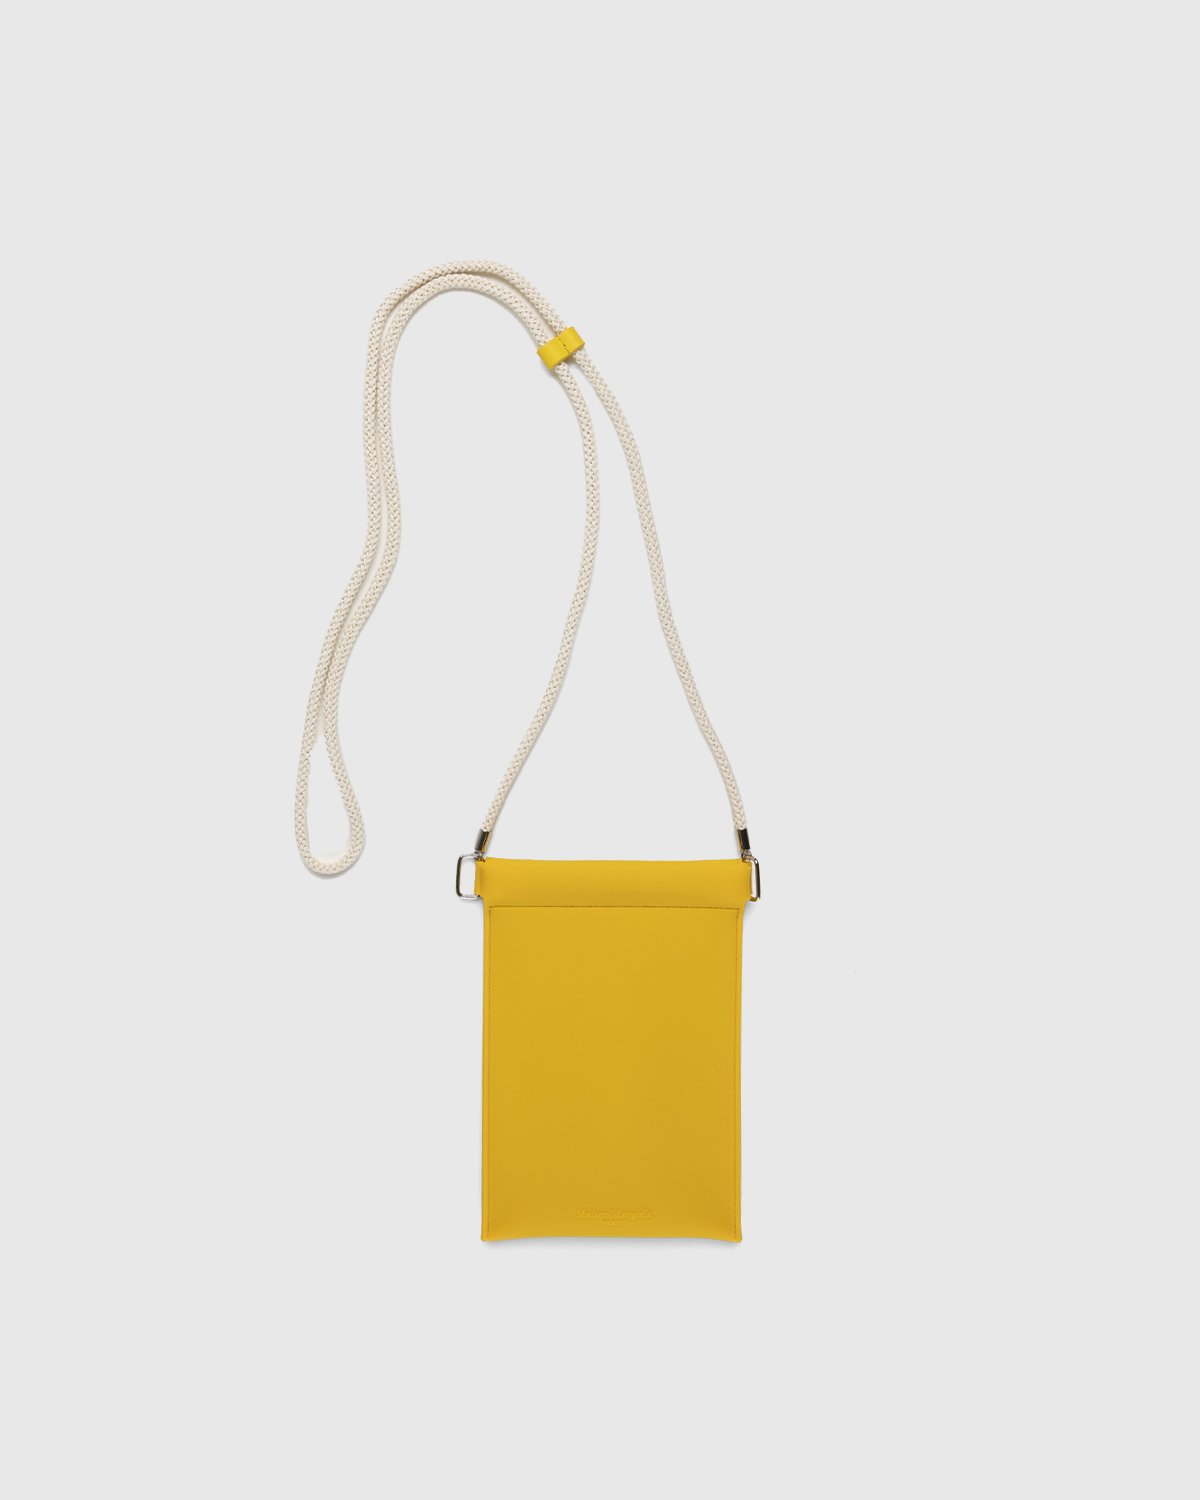 Maison Margiela - Rubber Leather Phone Case Yellow - Lifestyle - Yellow - Image 2